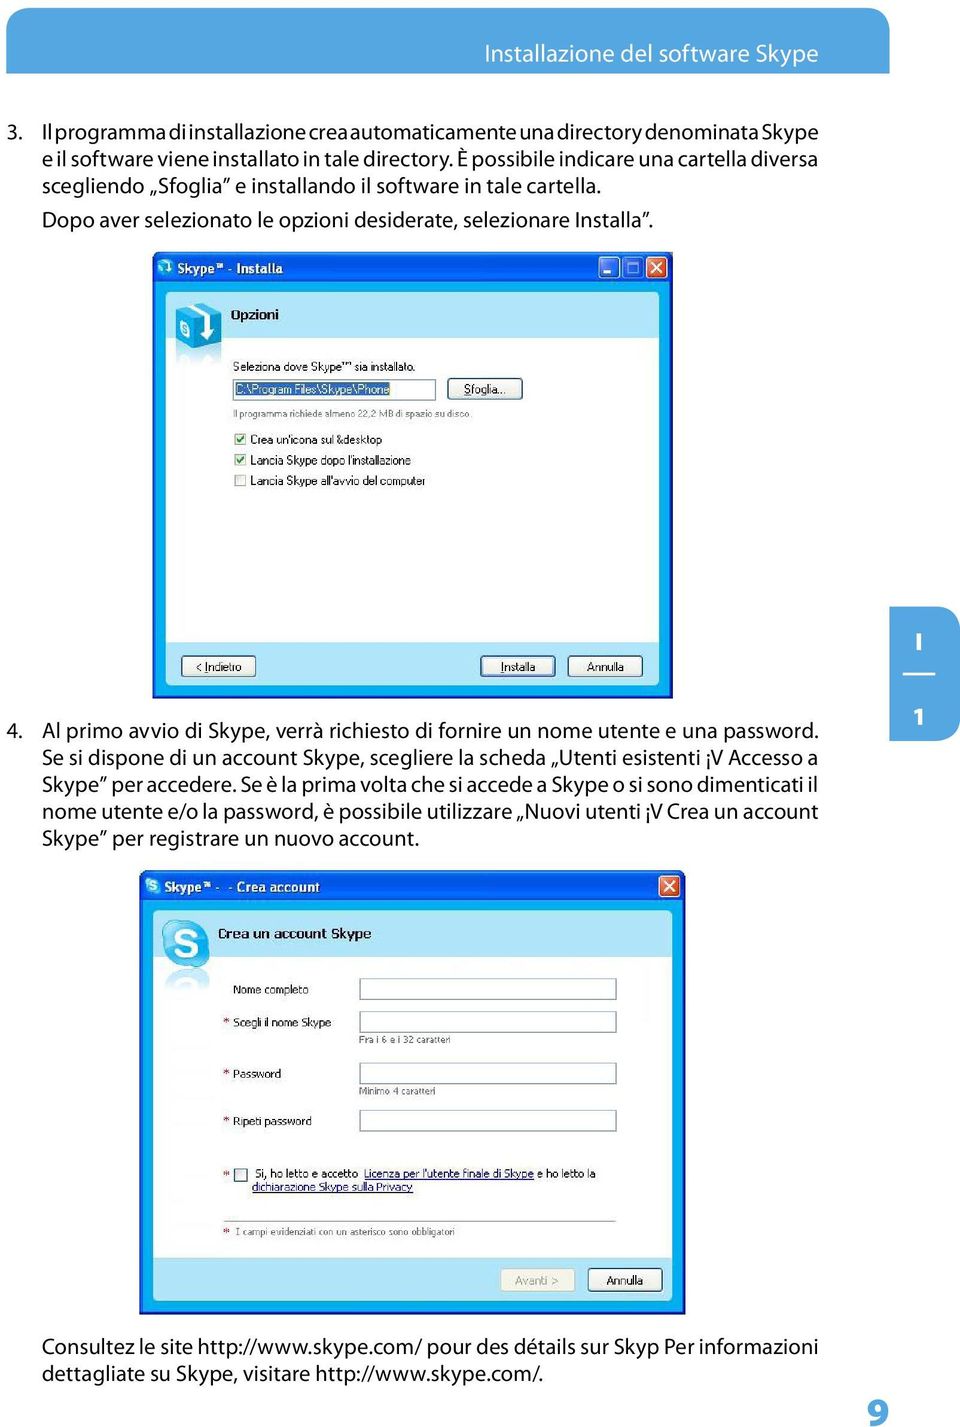 Al primo avvio di Skype, verrà richiesto di fornire un nome utente e una password. Se si dispone di un account Skype, scegliere la scheda Utenti esistenti V Accesso a Skype per accedere.